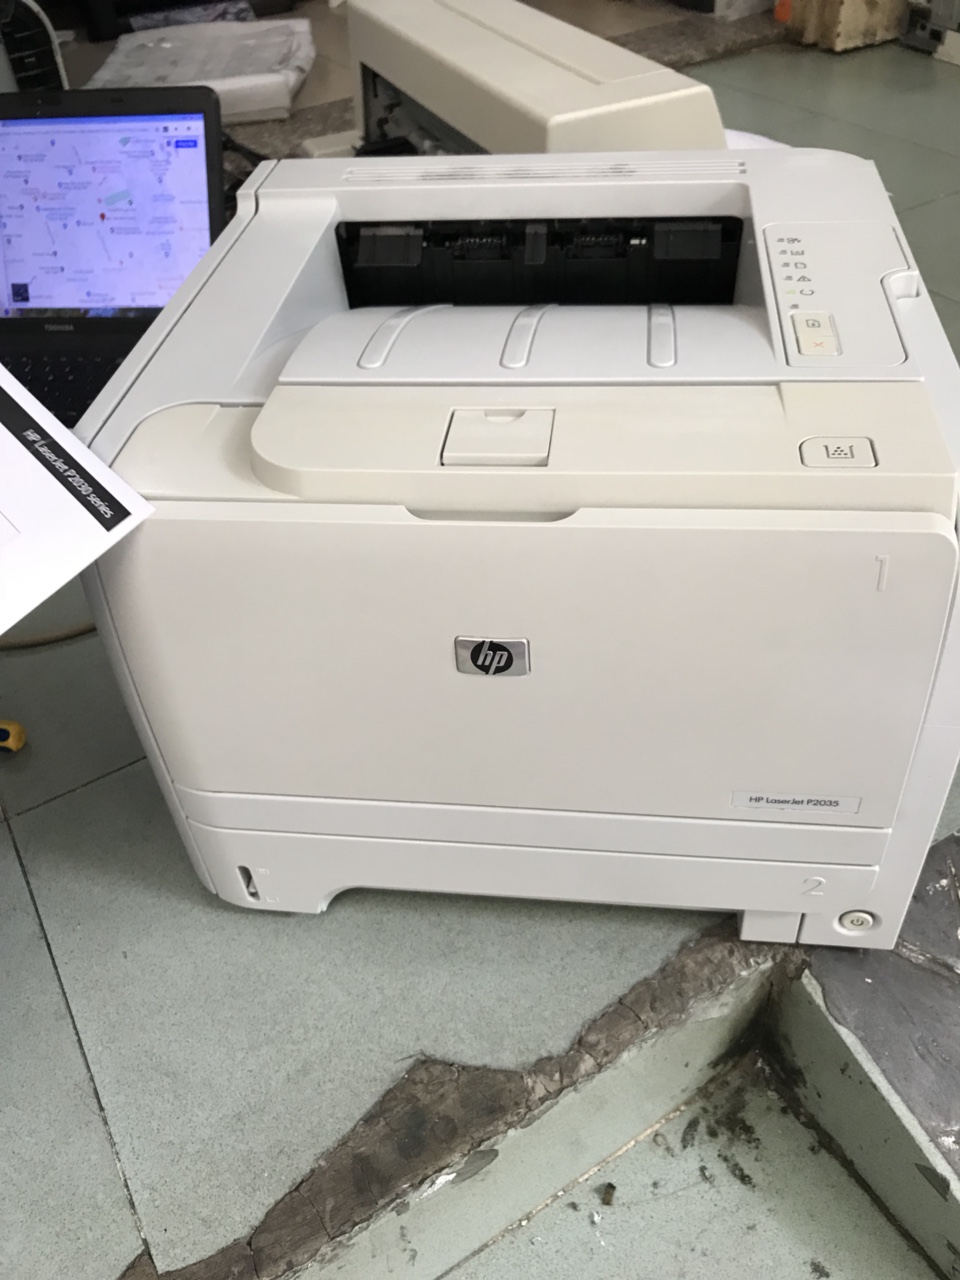 Máy in cũ HP LaserJet P2035 Printer (CE461A)